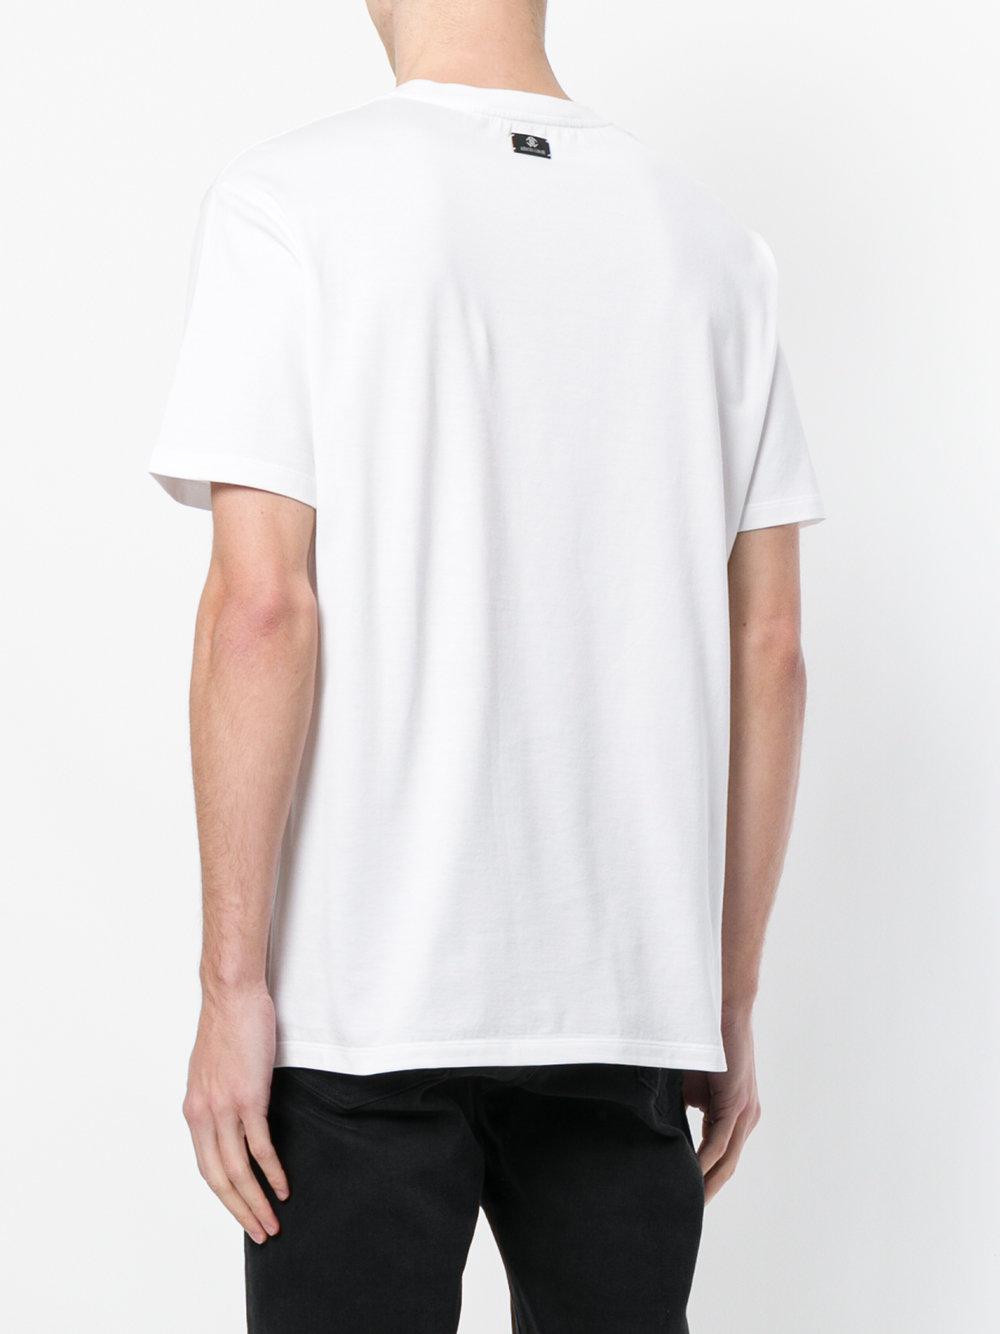 Lyst - Roberto Cavalli Snake Print T-shirt in White for Men